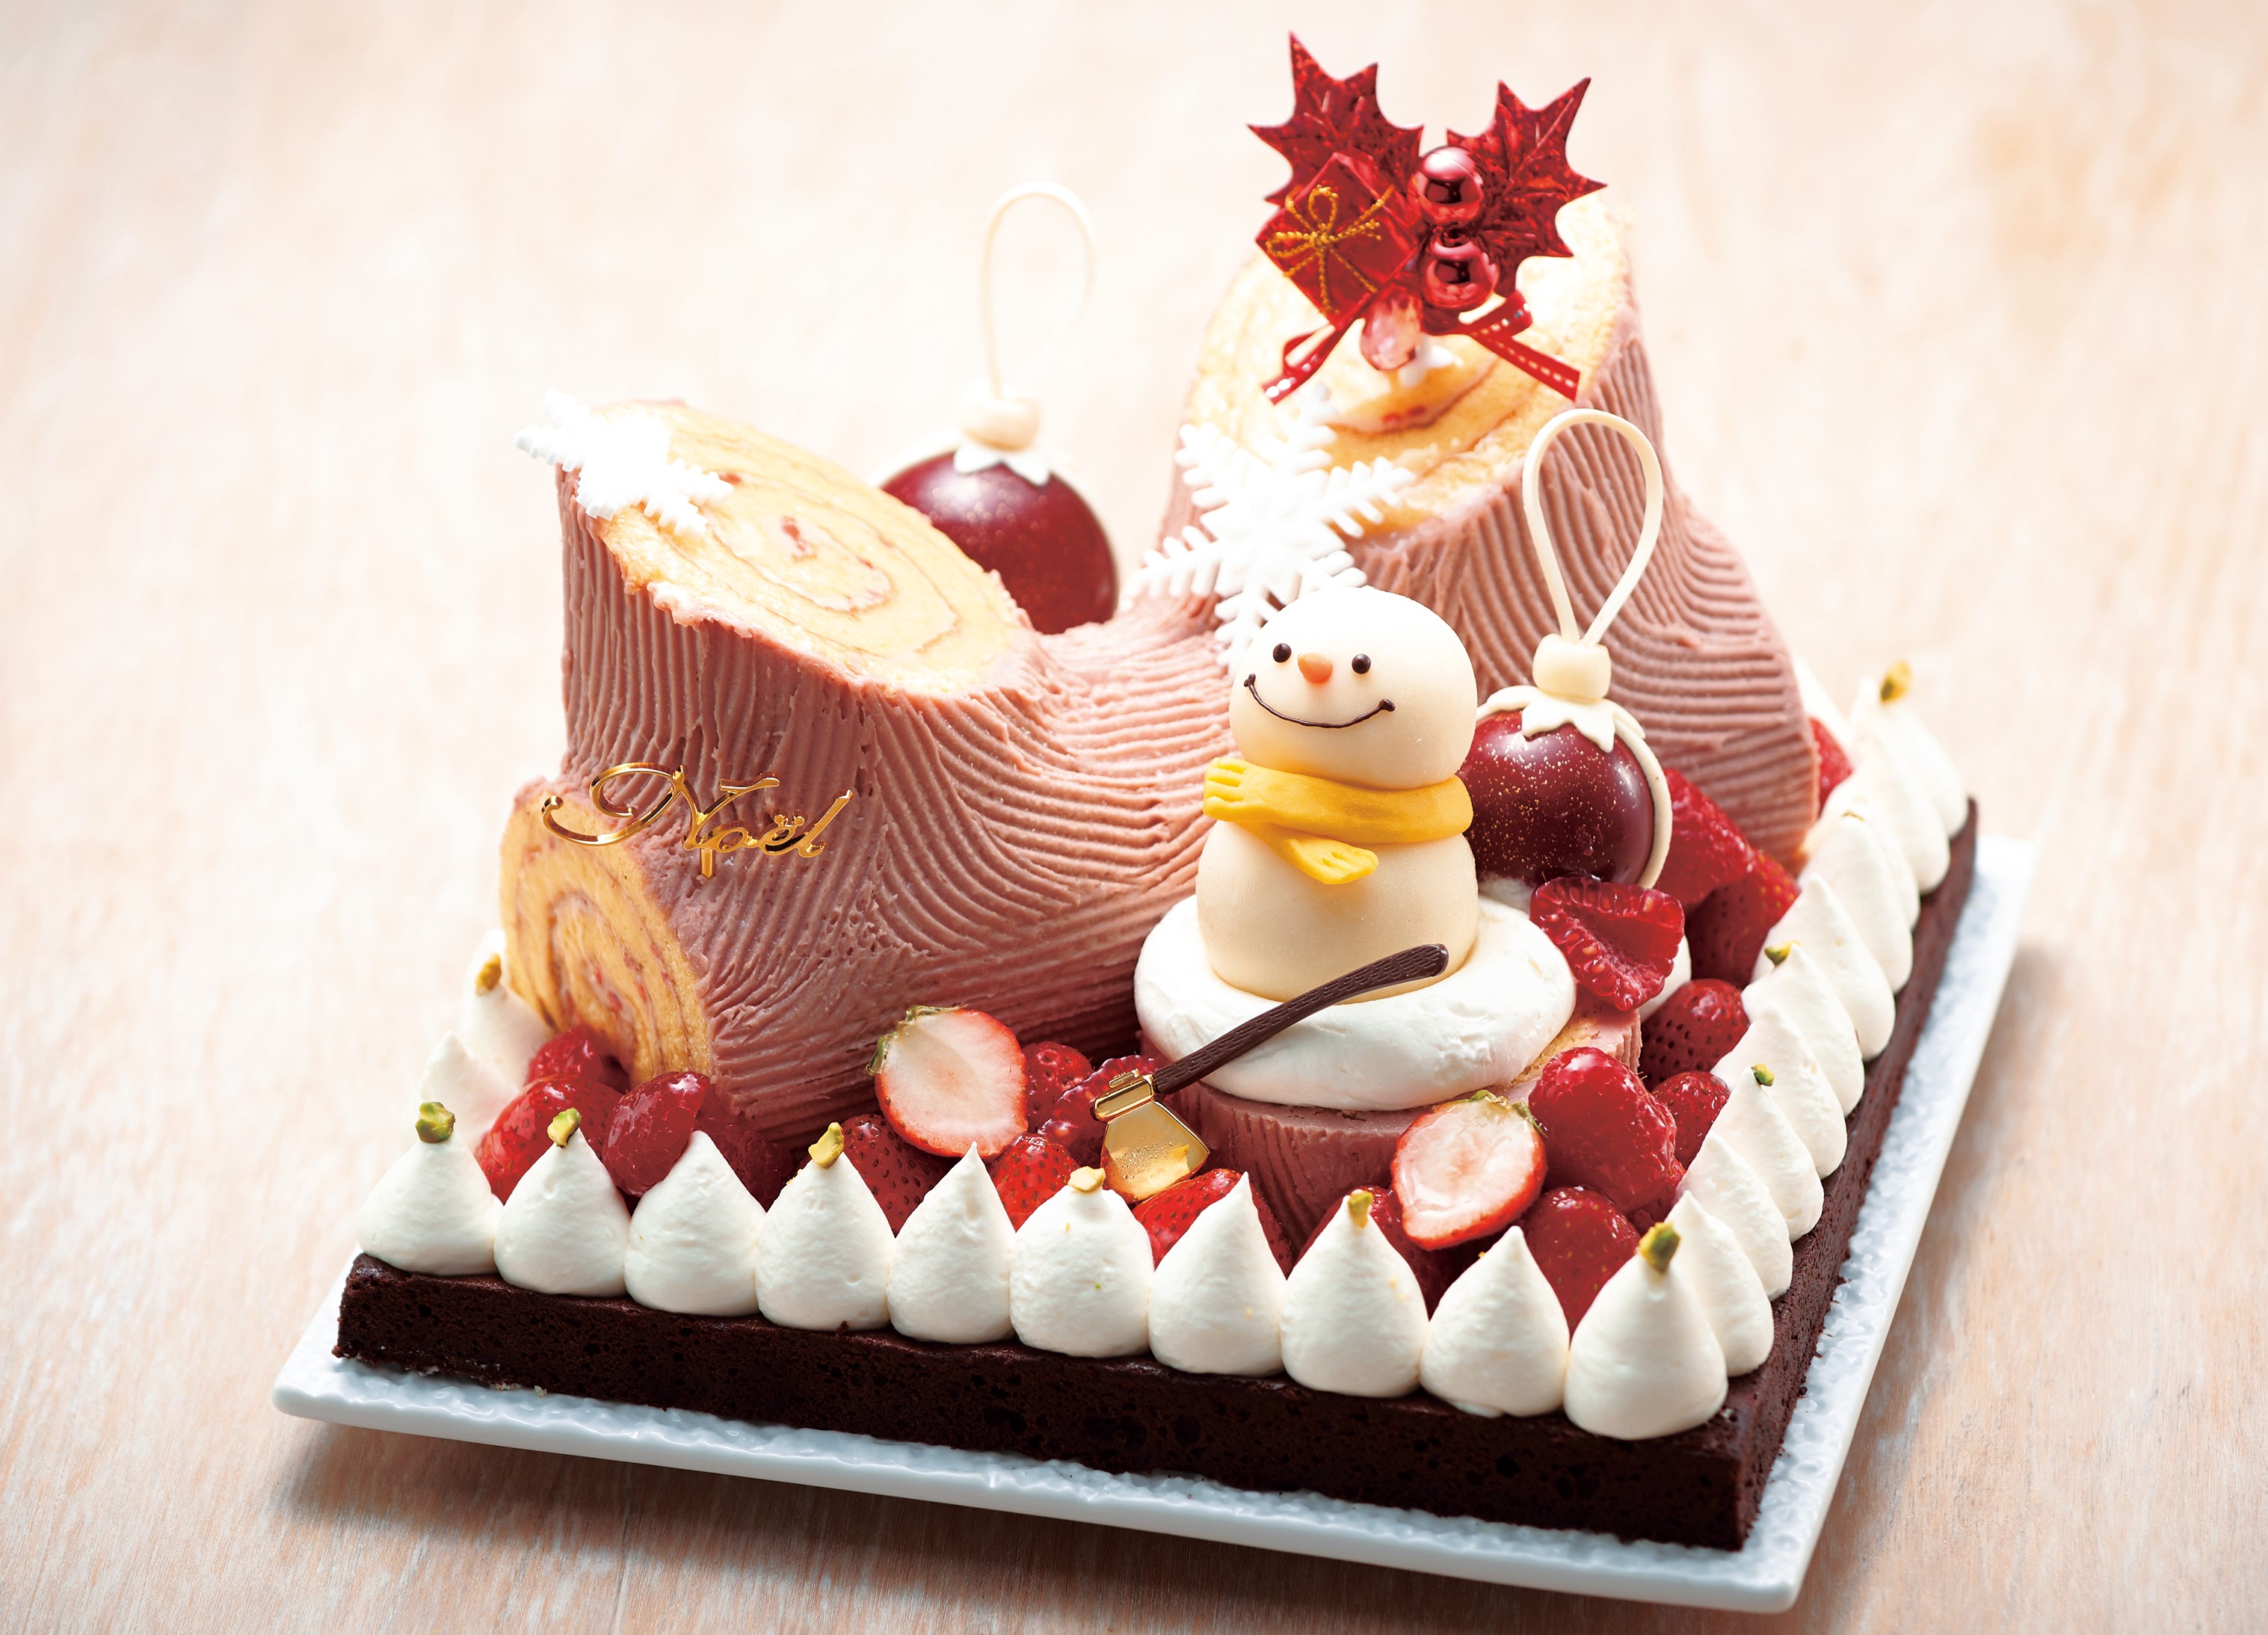 クリスマスケーキ 横浜ロイヤルパークホテル Christmas Special Selection 11月1日 火 より予約 受付開始 株式会社ロイヤルパークホテルズアンドリゾーツのプレスリリース